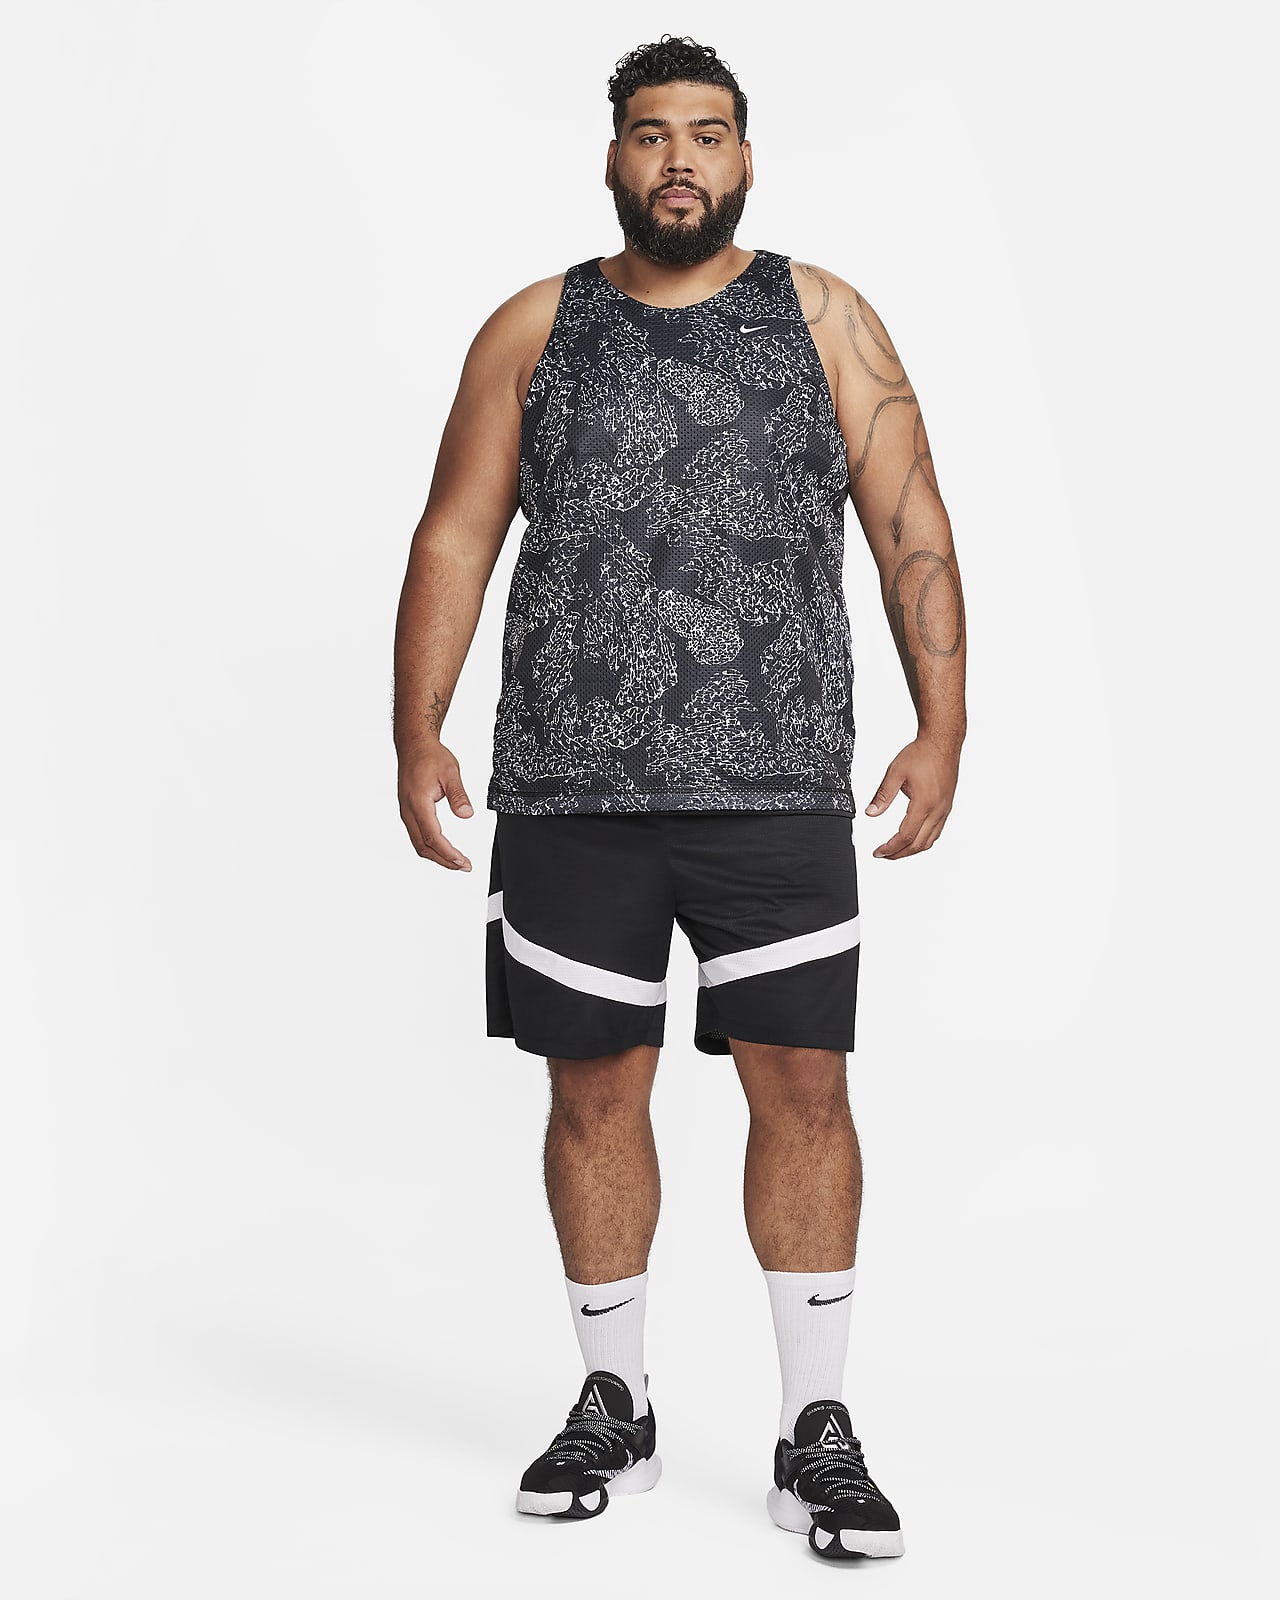 New Men's Nike AEROSWIFT NBA Black White Blank Basketball Jersey Size 56  Nets